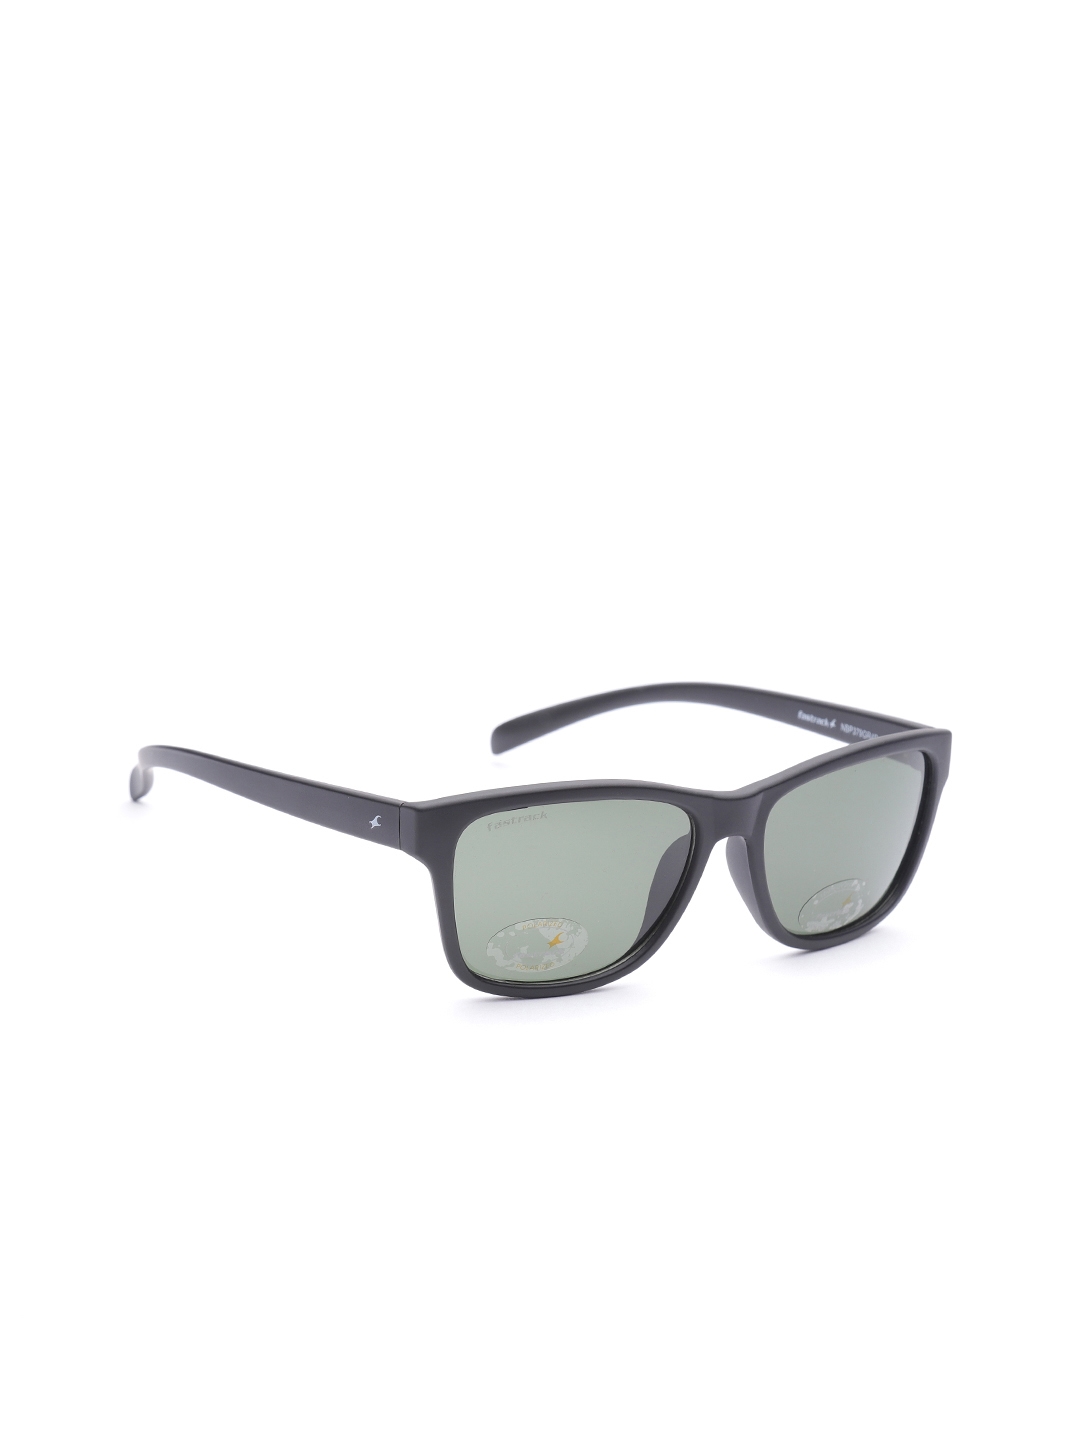 Wayfarer Rimmed Sunglasses Fastrack - PC001BK20 at best price | Titan Eye+